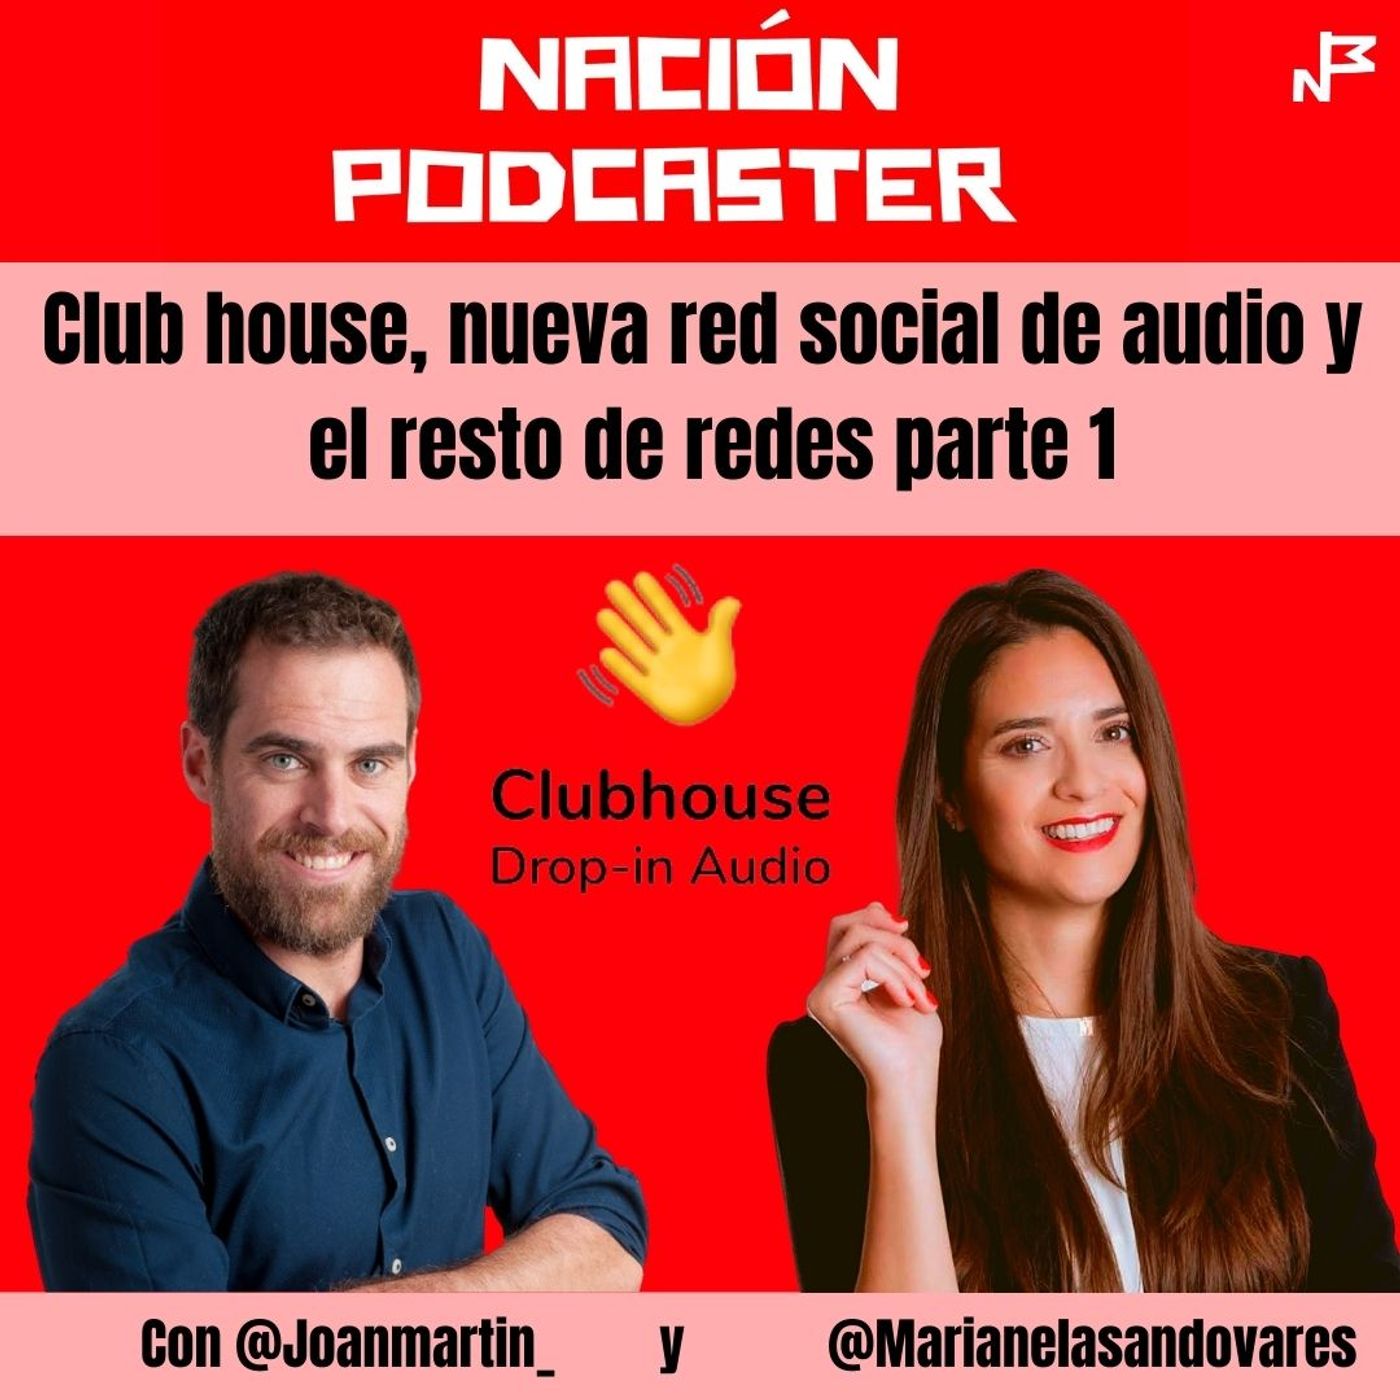 Club house, nueva red social de audio. Comentando las redes (parte 1) con Marianela Sandovares y Joan Martín